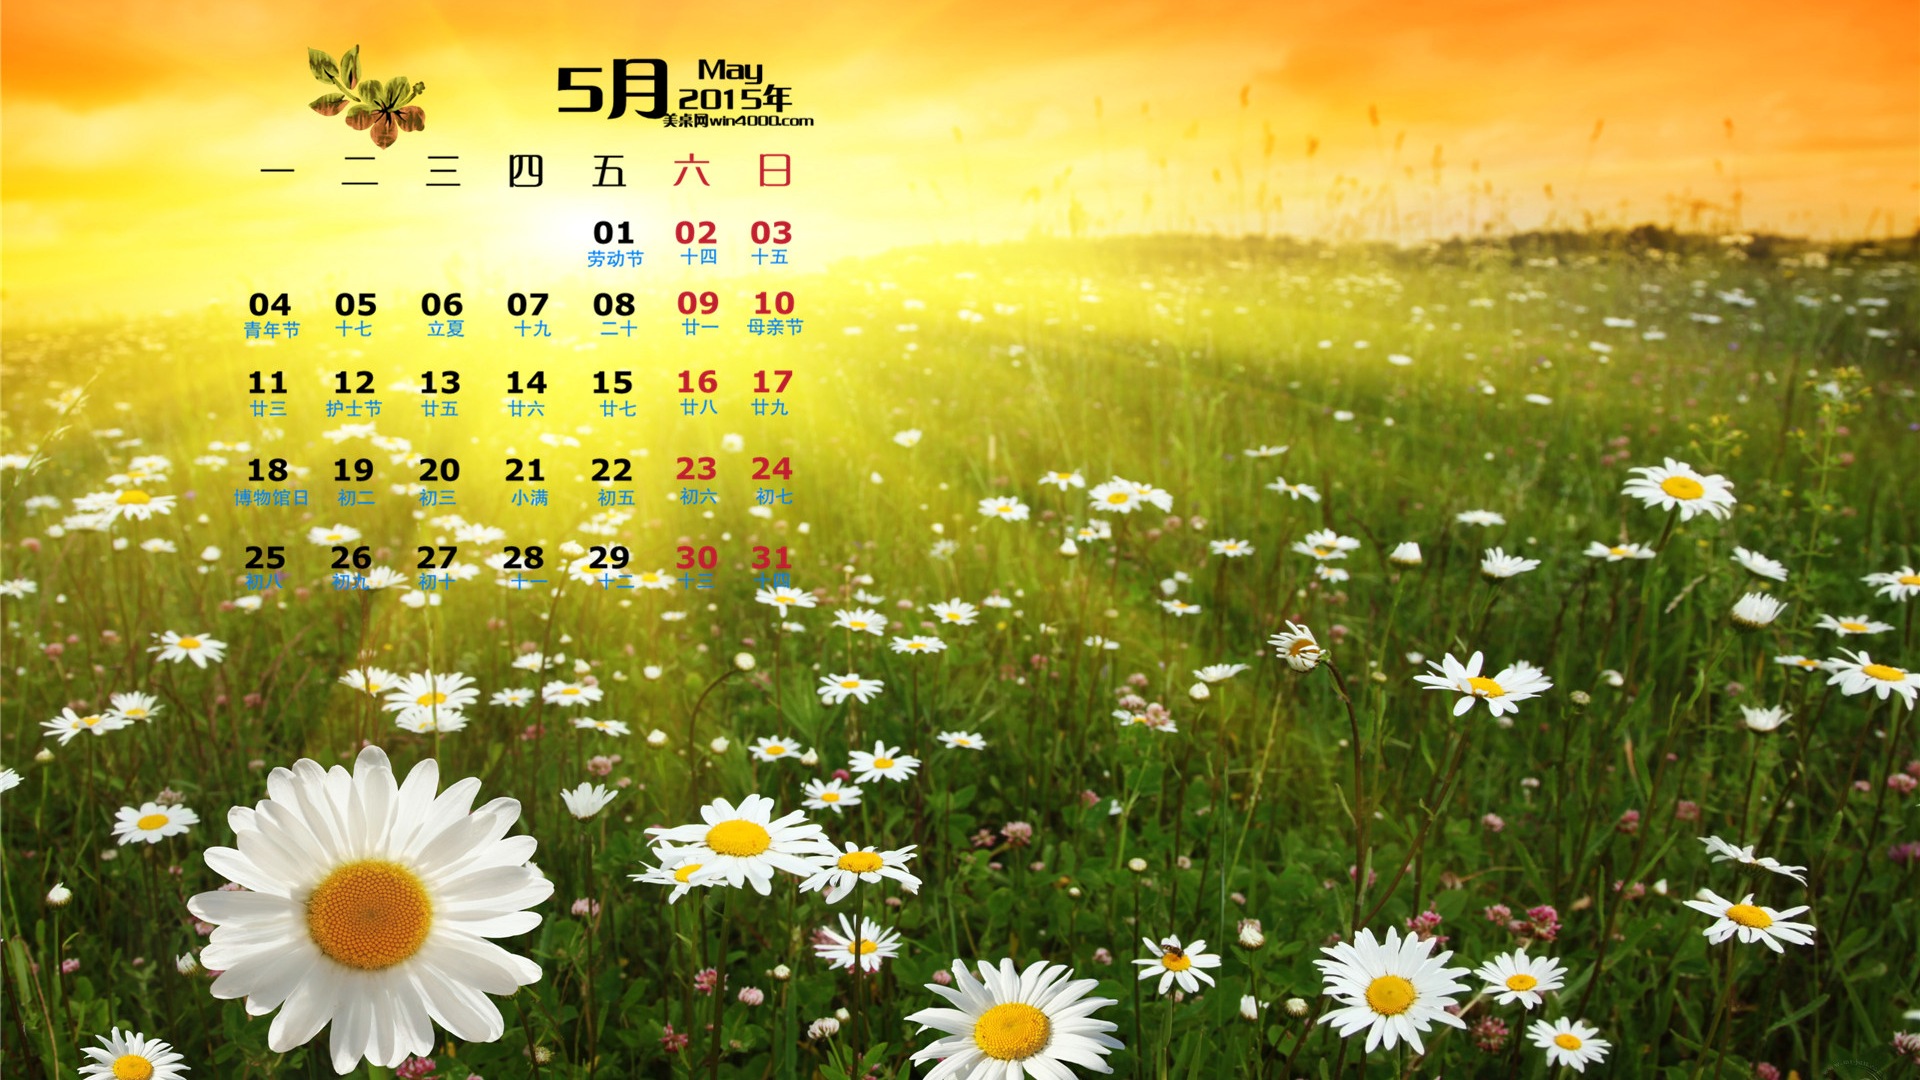 Mai 2015 Kalender Wallpaper (1) #15 - 1920x1080